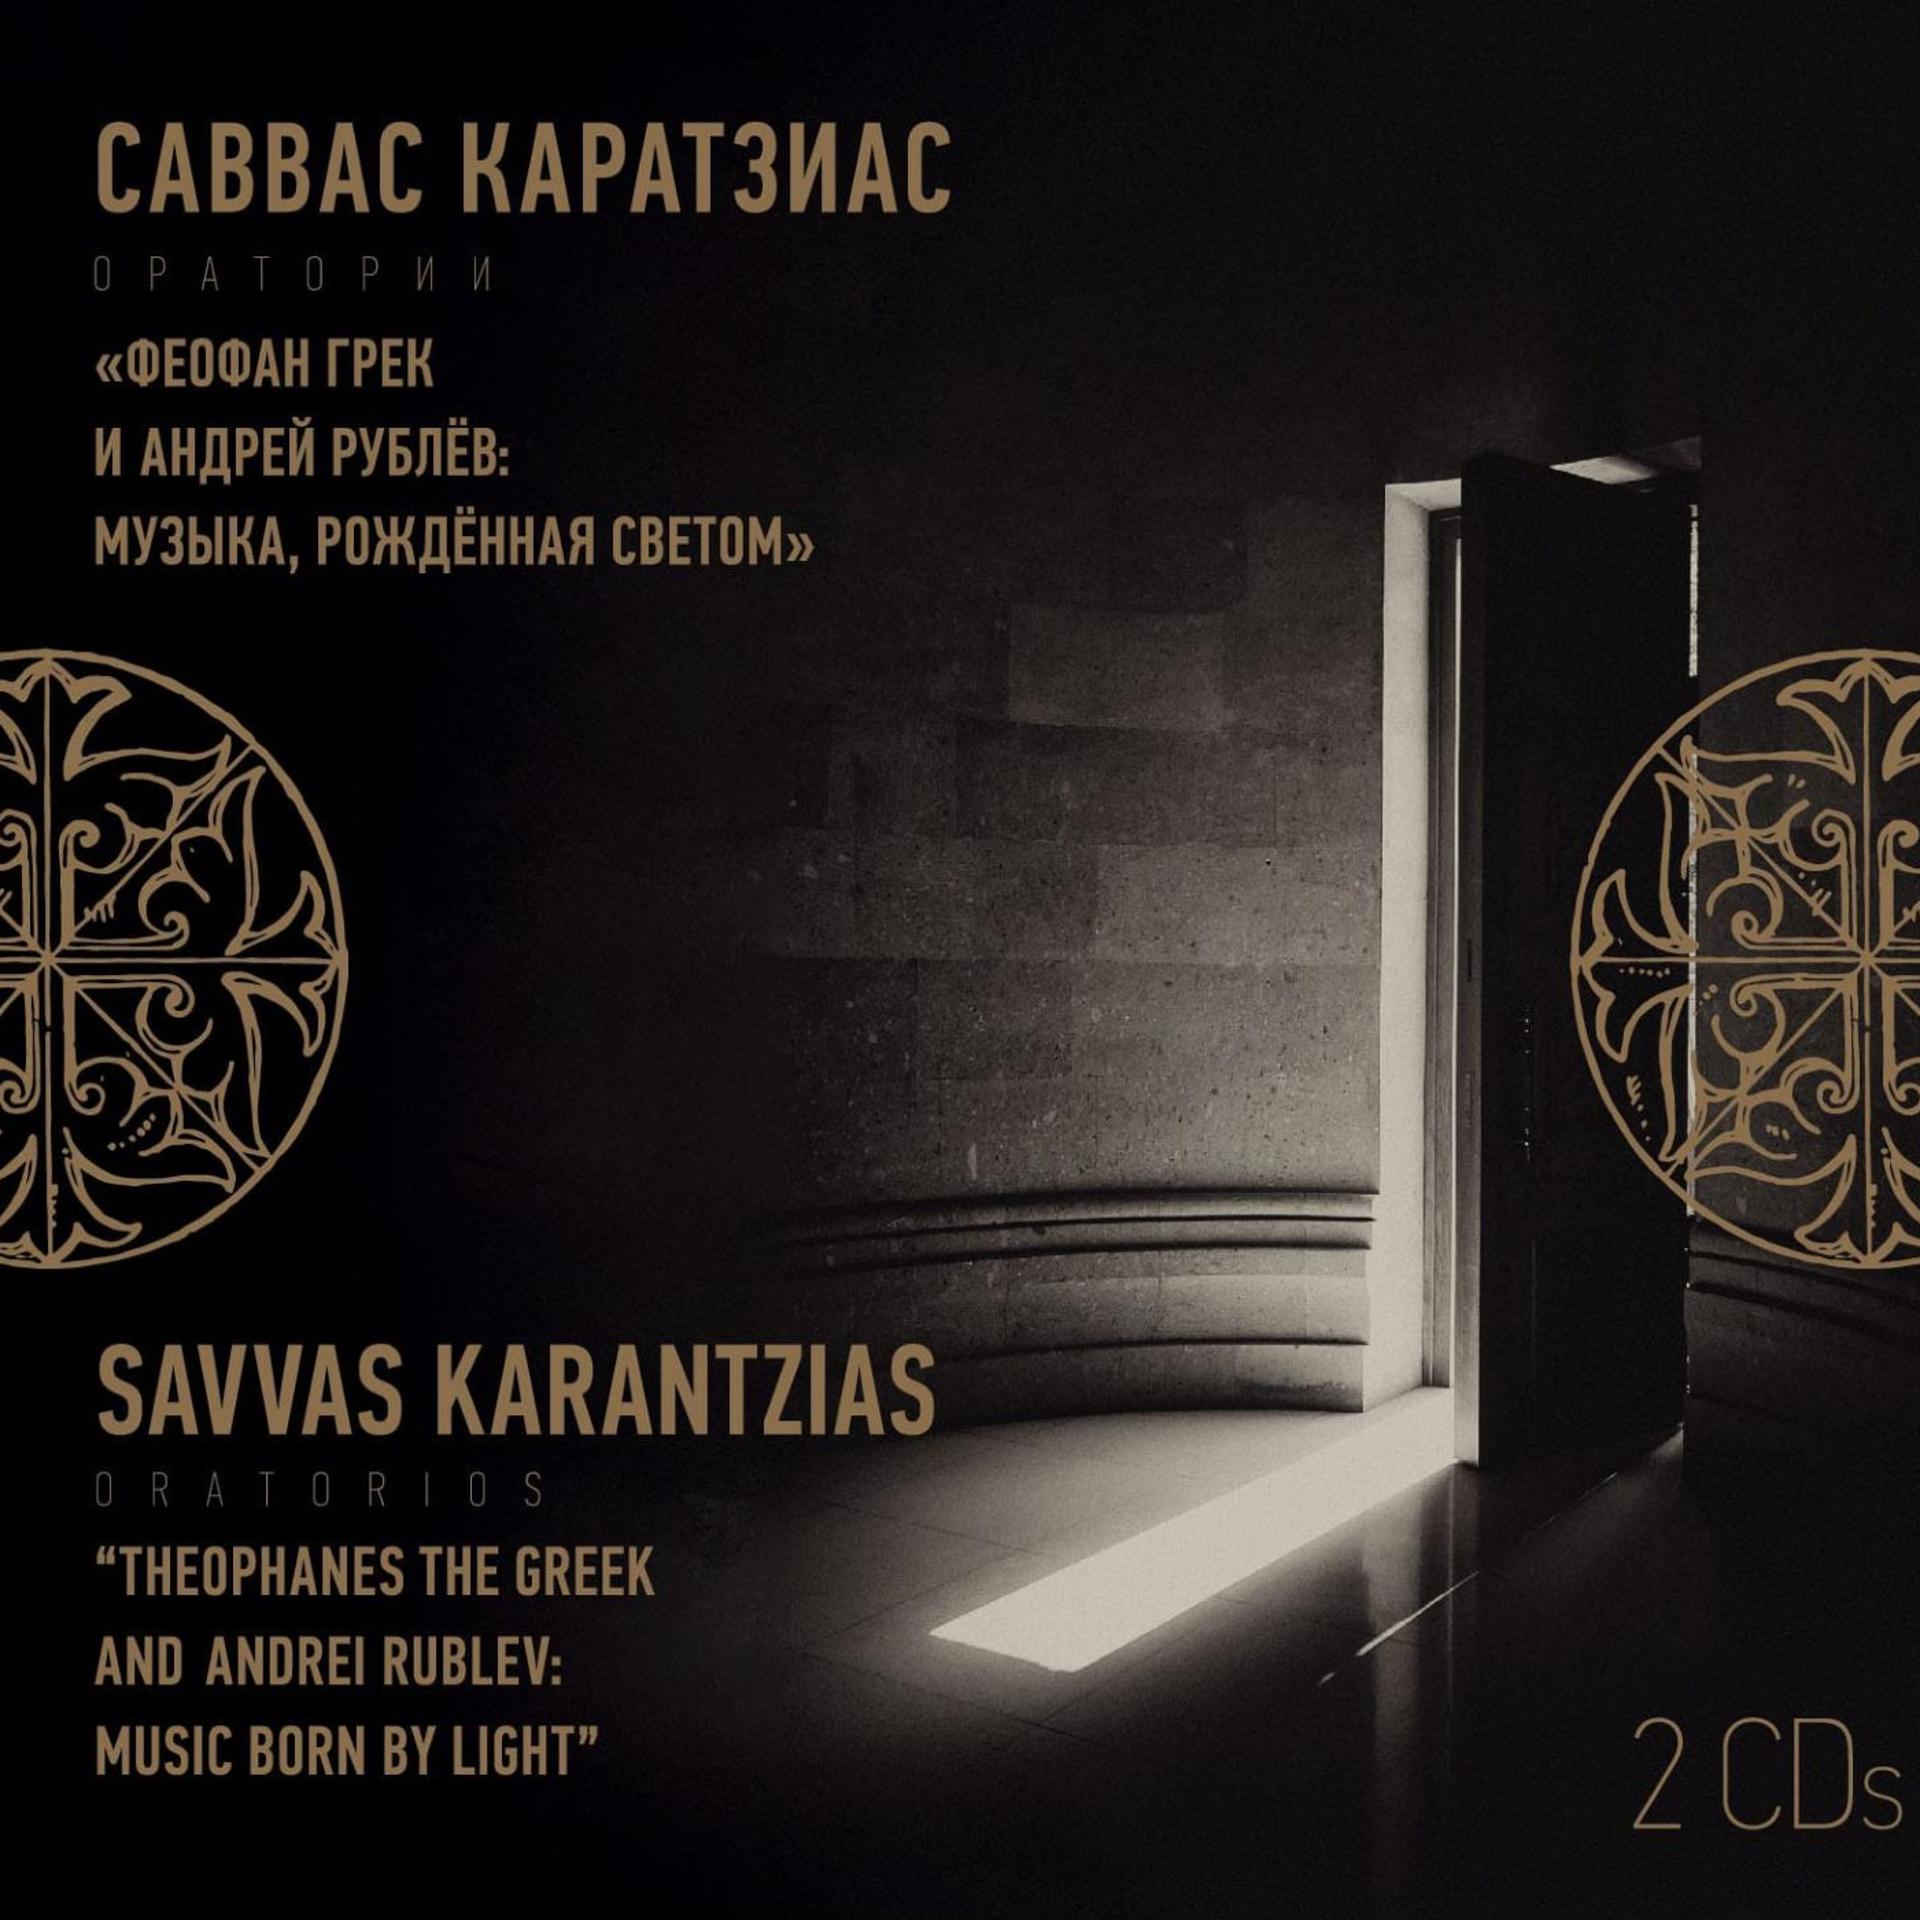 Постер альбома Саввас Каратзиас: оратории "Феофан Грек и Андрей Рублёв: Музыка, рождённая светом"